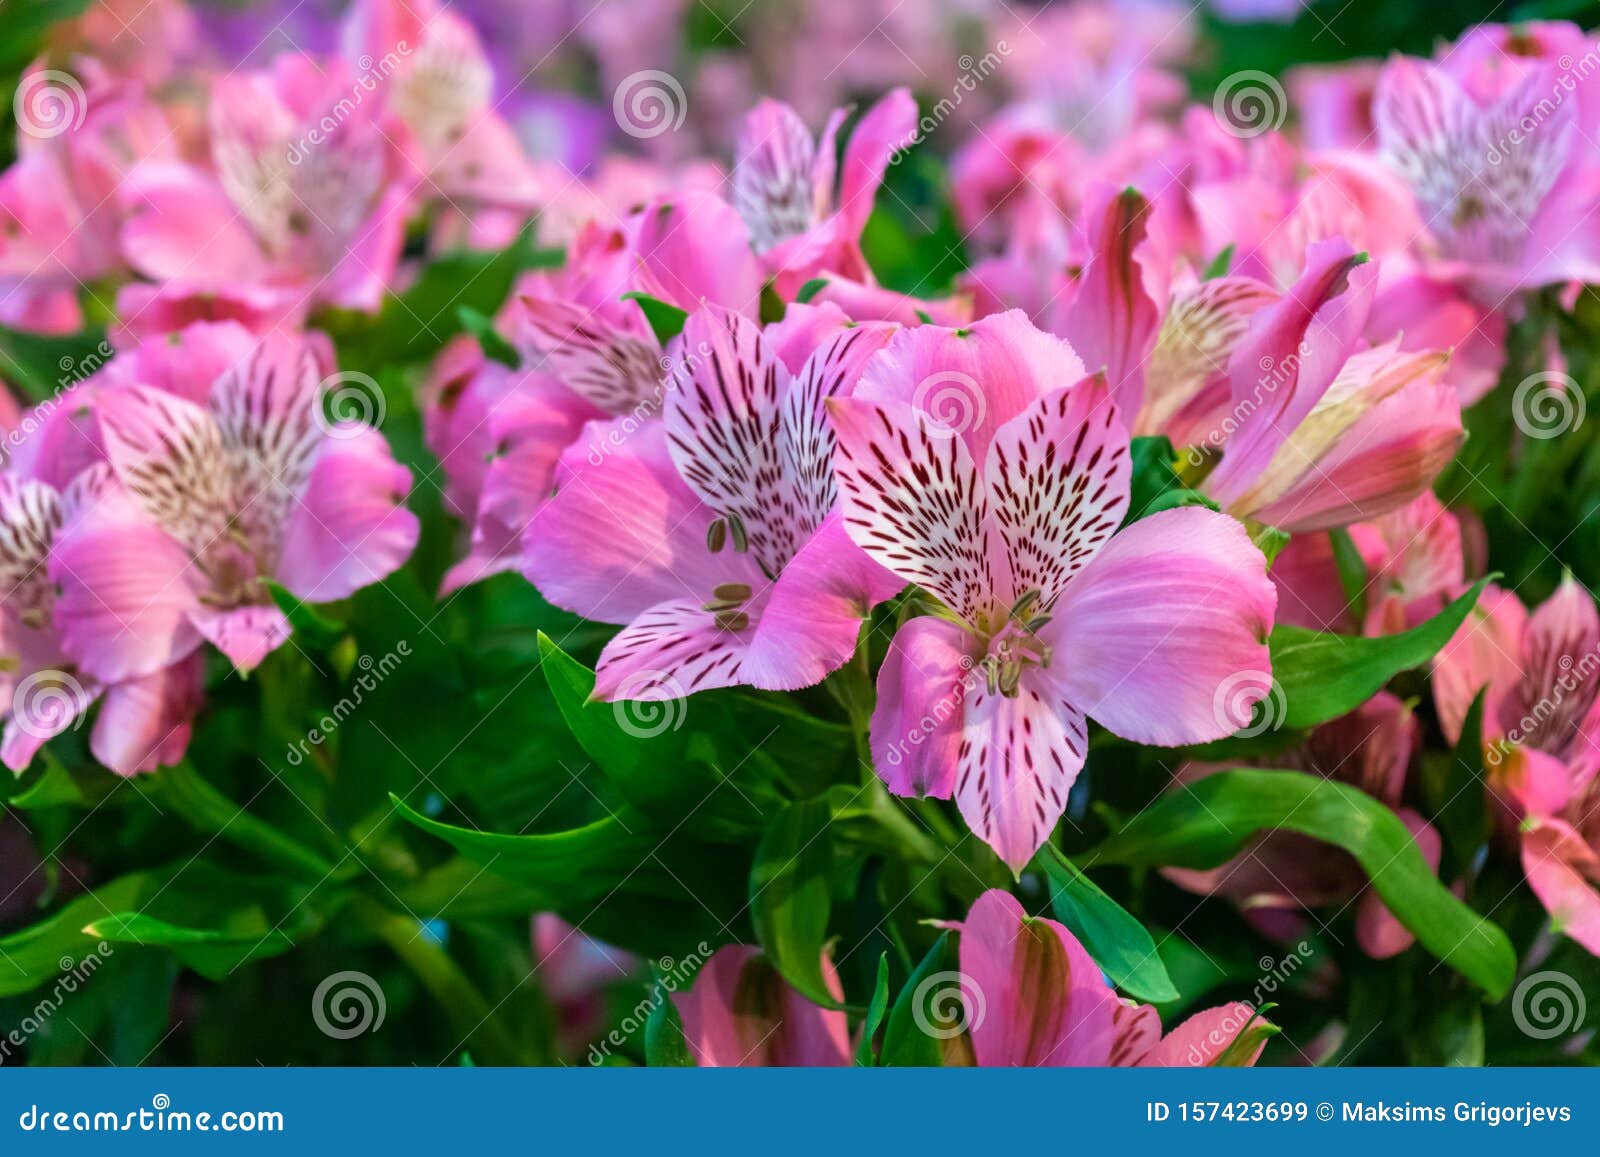 gentle pink alstroemeria flowers in summer garden, park. floral background